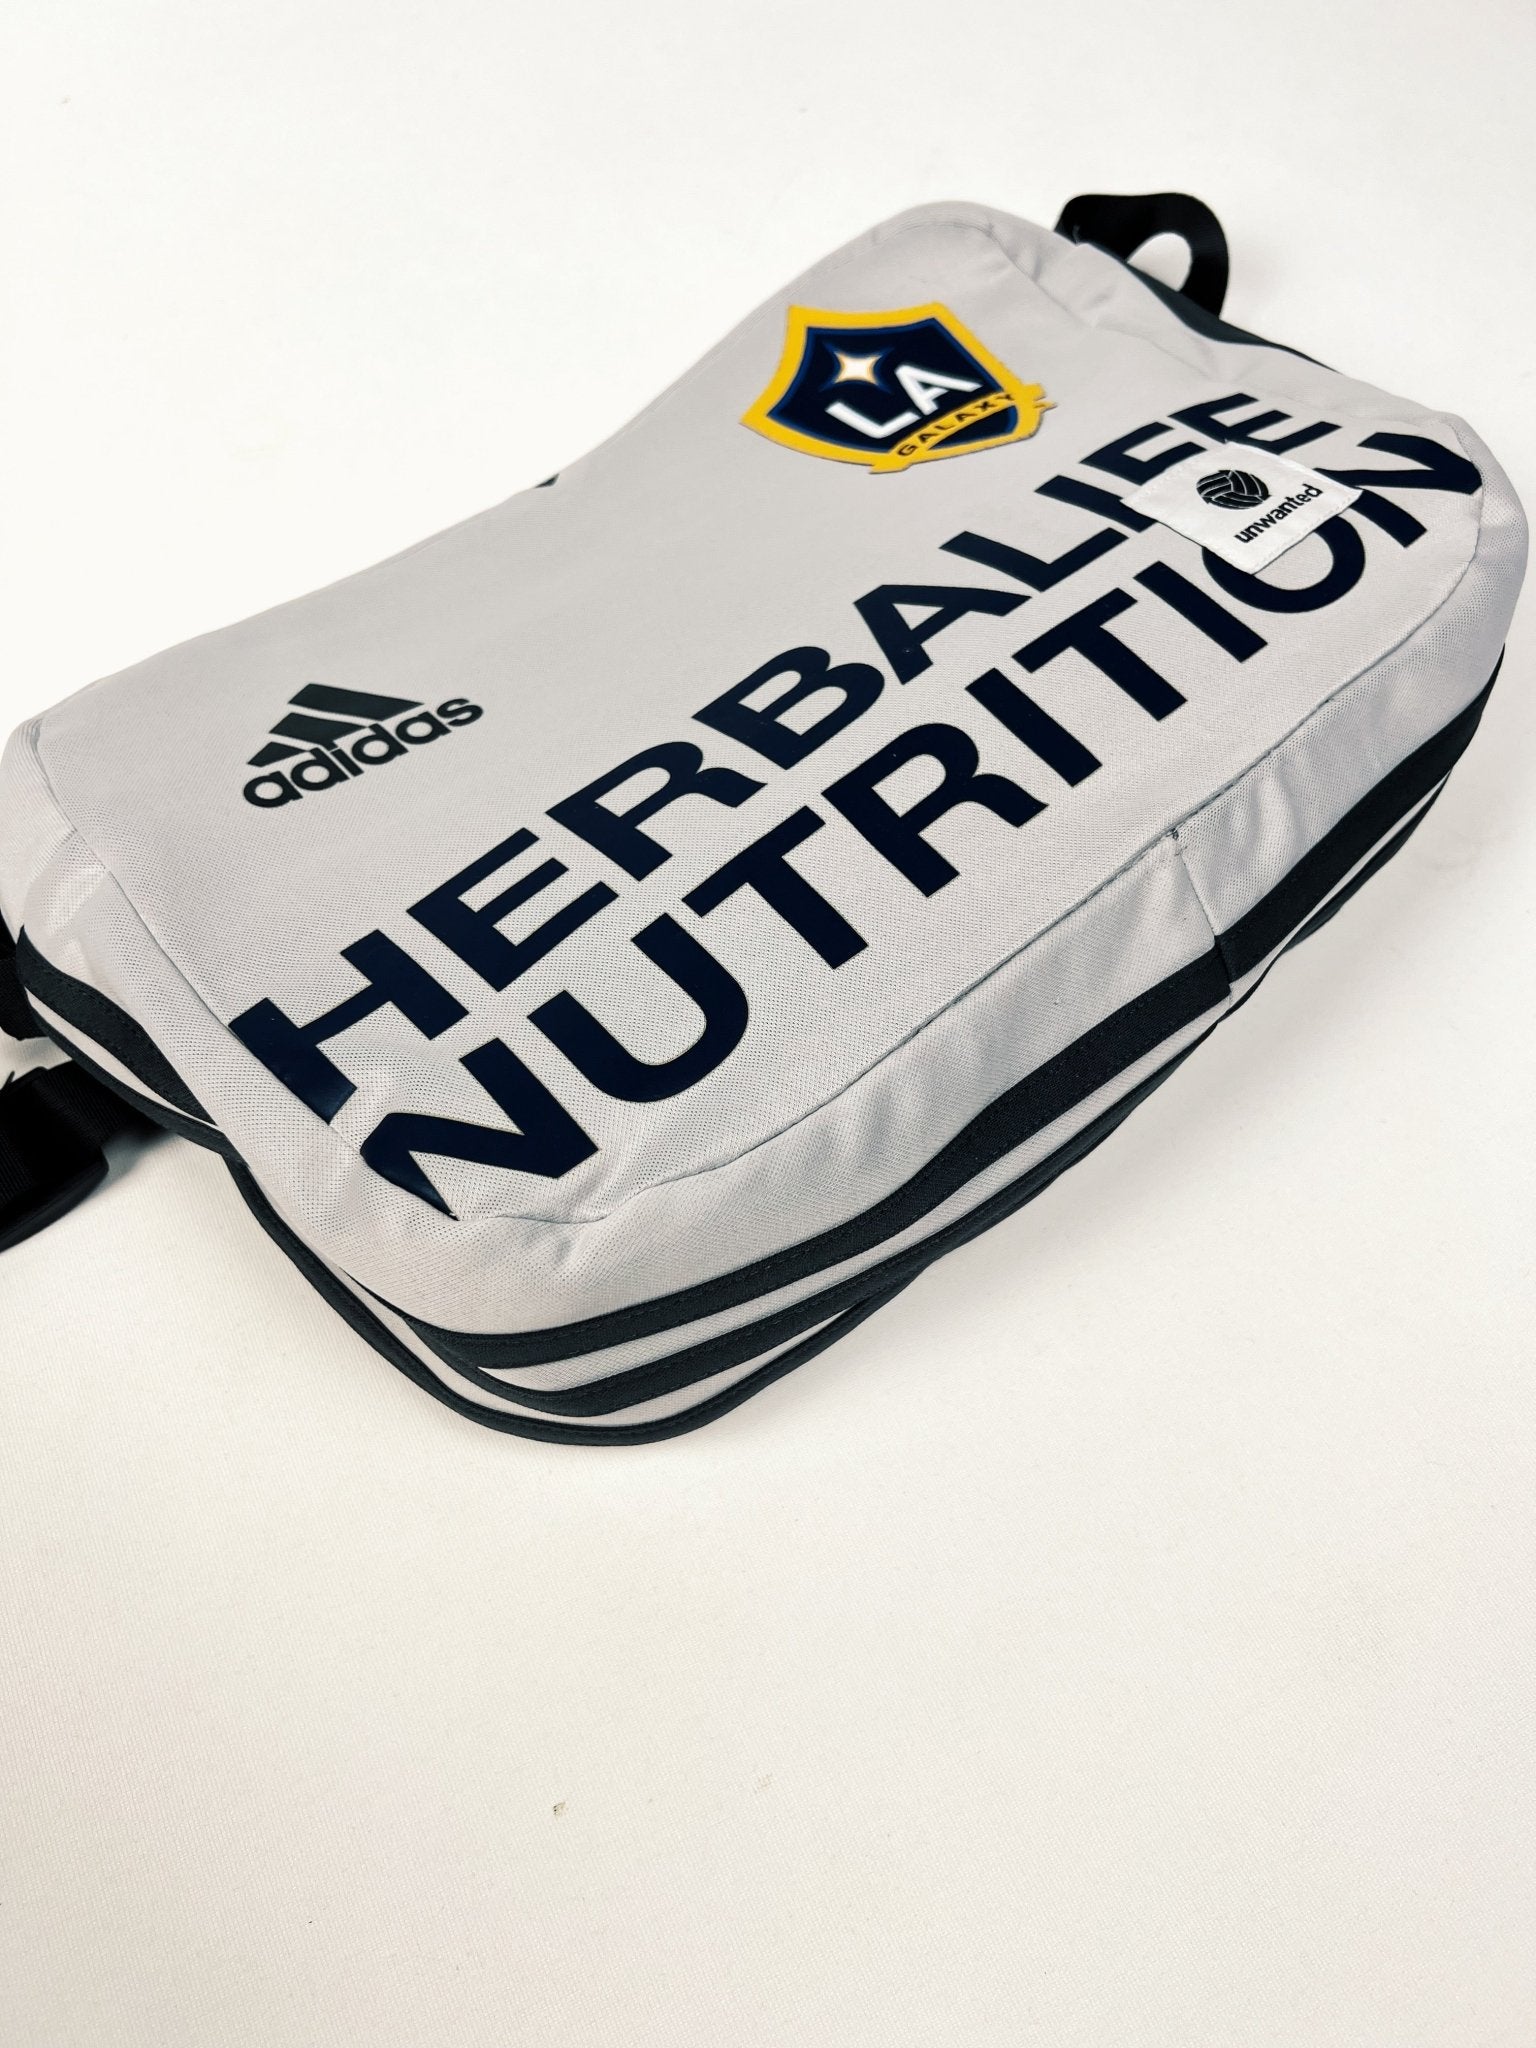 LA Galaxy Side Bag-Unwanted FC-stride